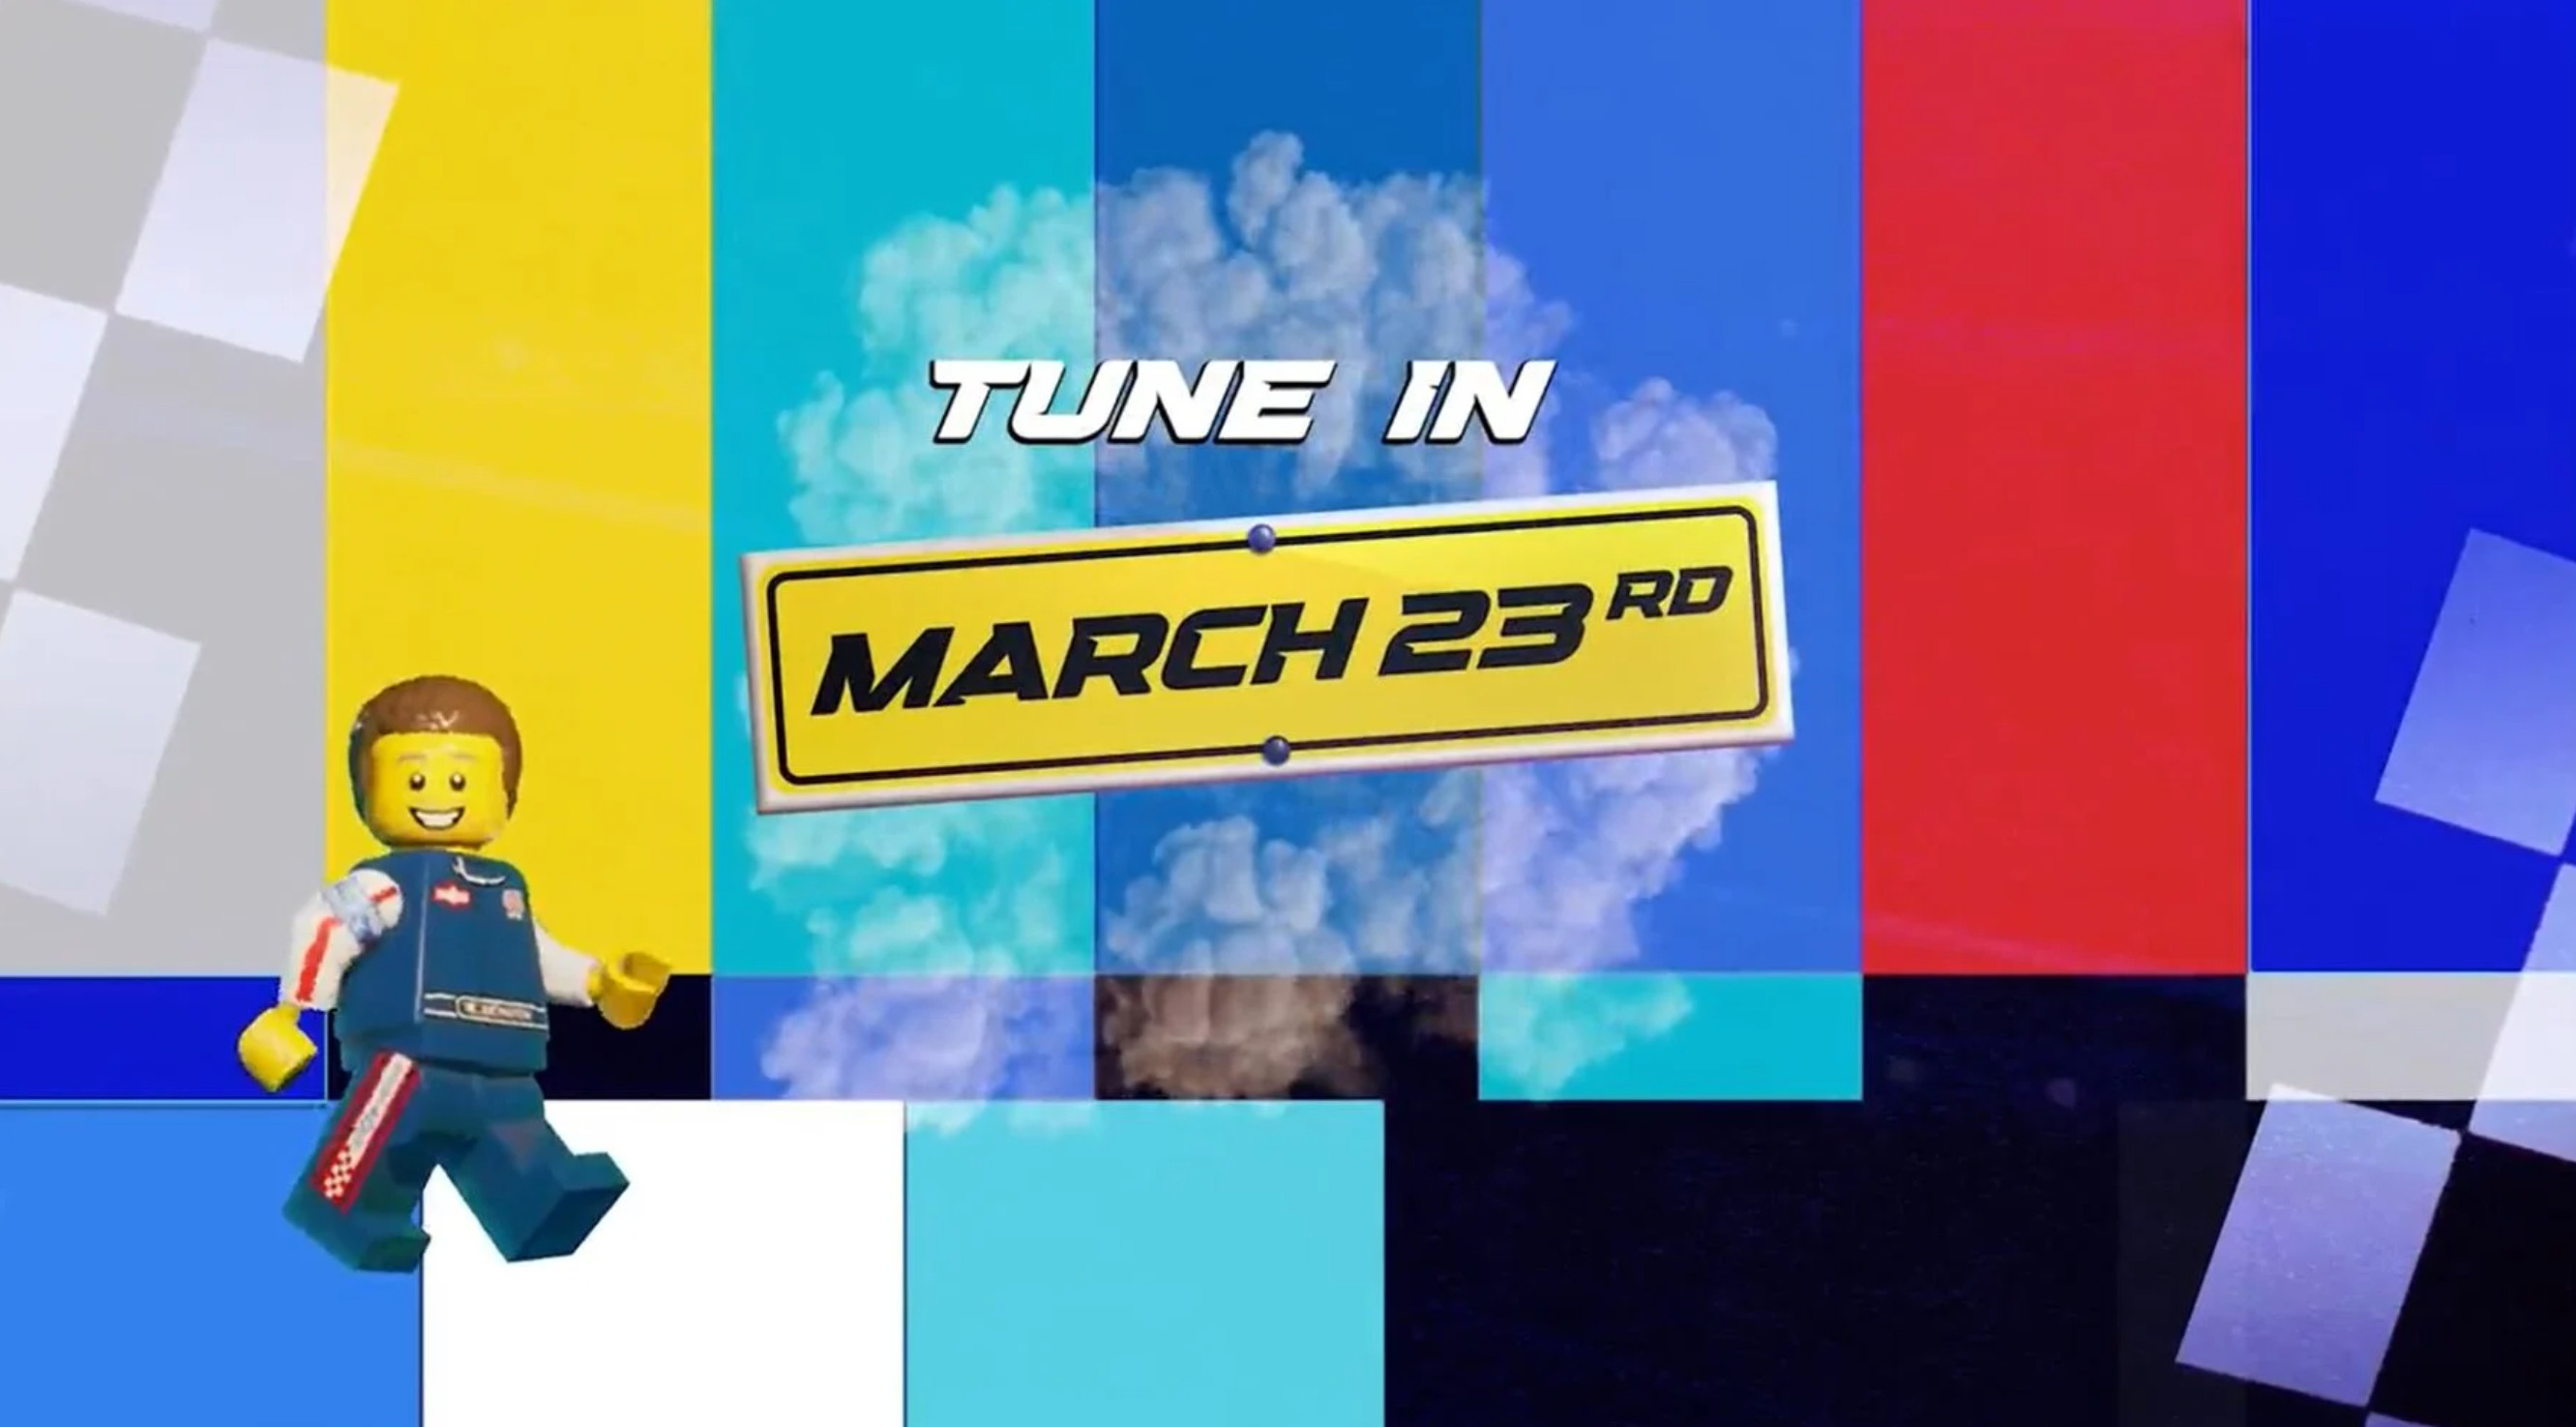 樂高和2K將於3月23日公布一個競速遊戲